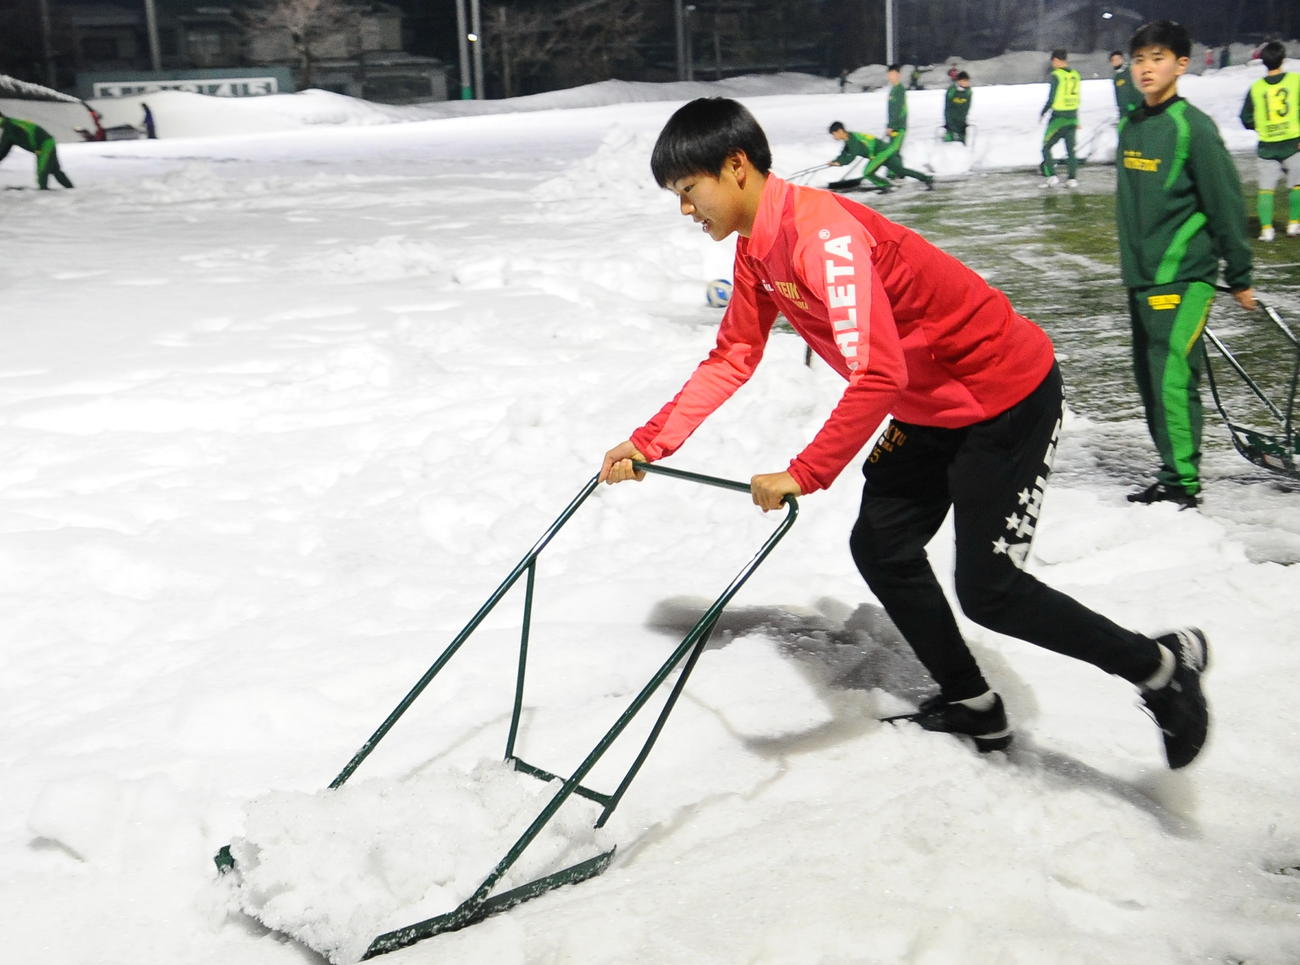 高校選抜から戻った帝京長岡・広井は雪かきでトレーニング